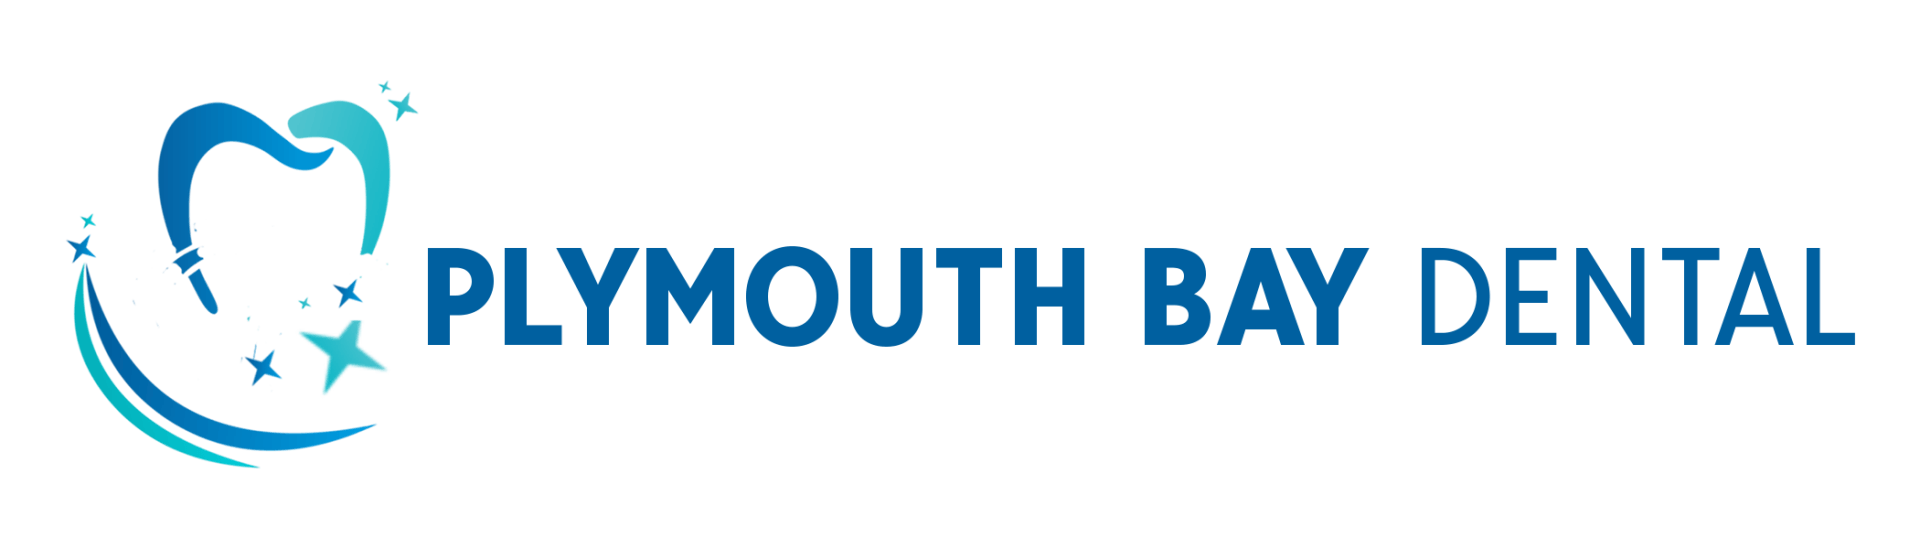 Plymouth Bay dental clinic